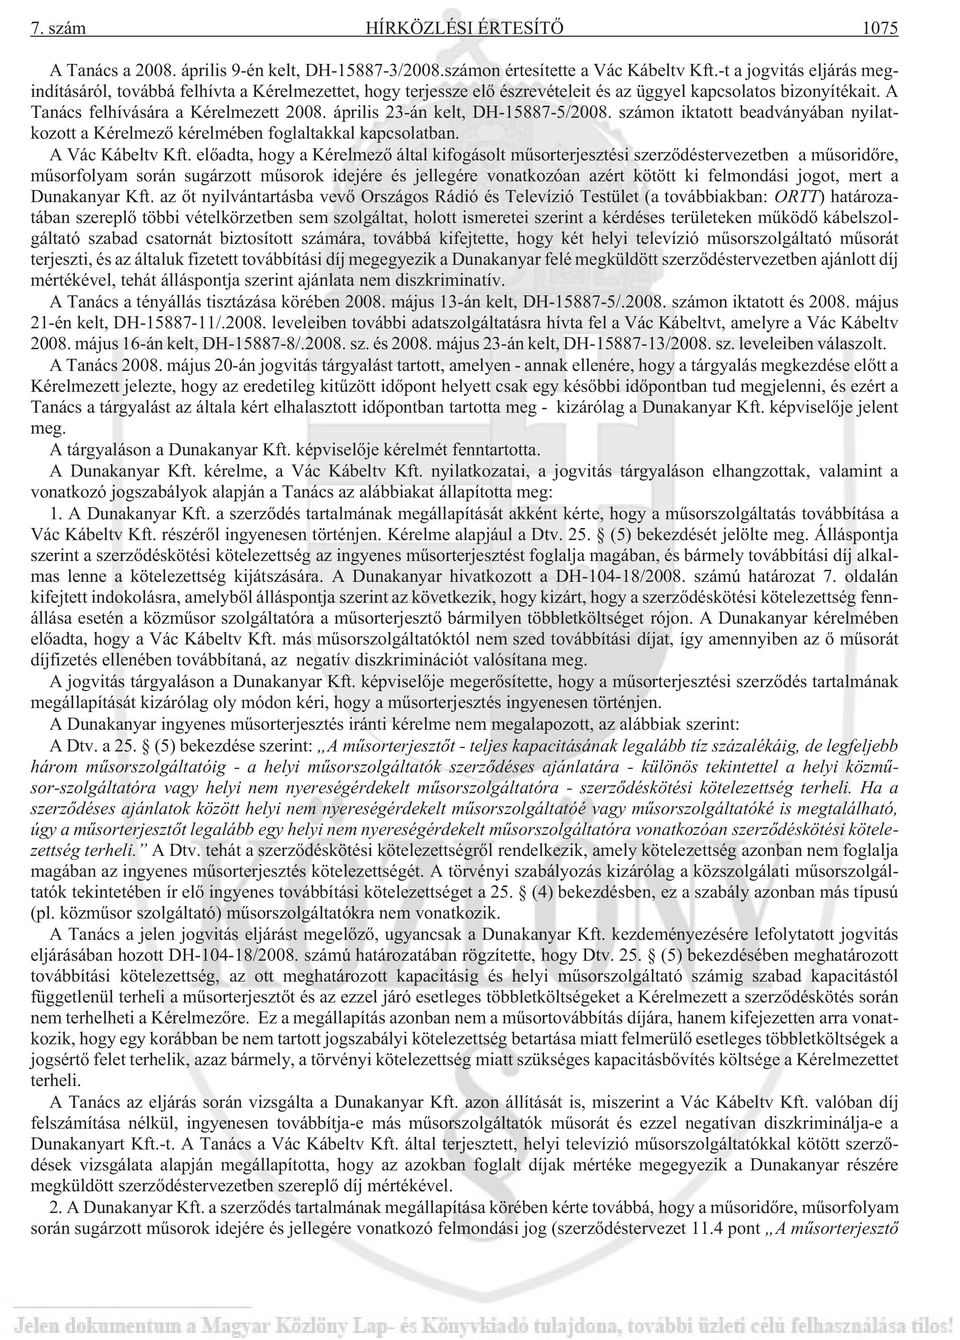 április 23-án kelt, DH-15887-5/2008. számon iktatott beadványában nyilatkozott a Kérelmezõ kérelmében foglaltakkal kapcsolatban. A Vác Kábeltv Kft.